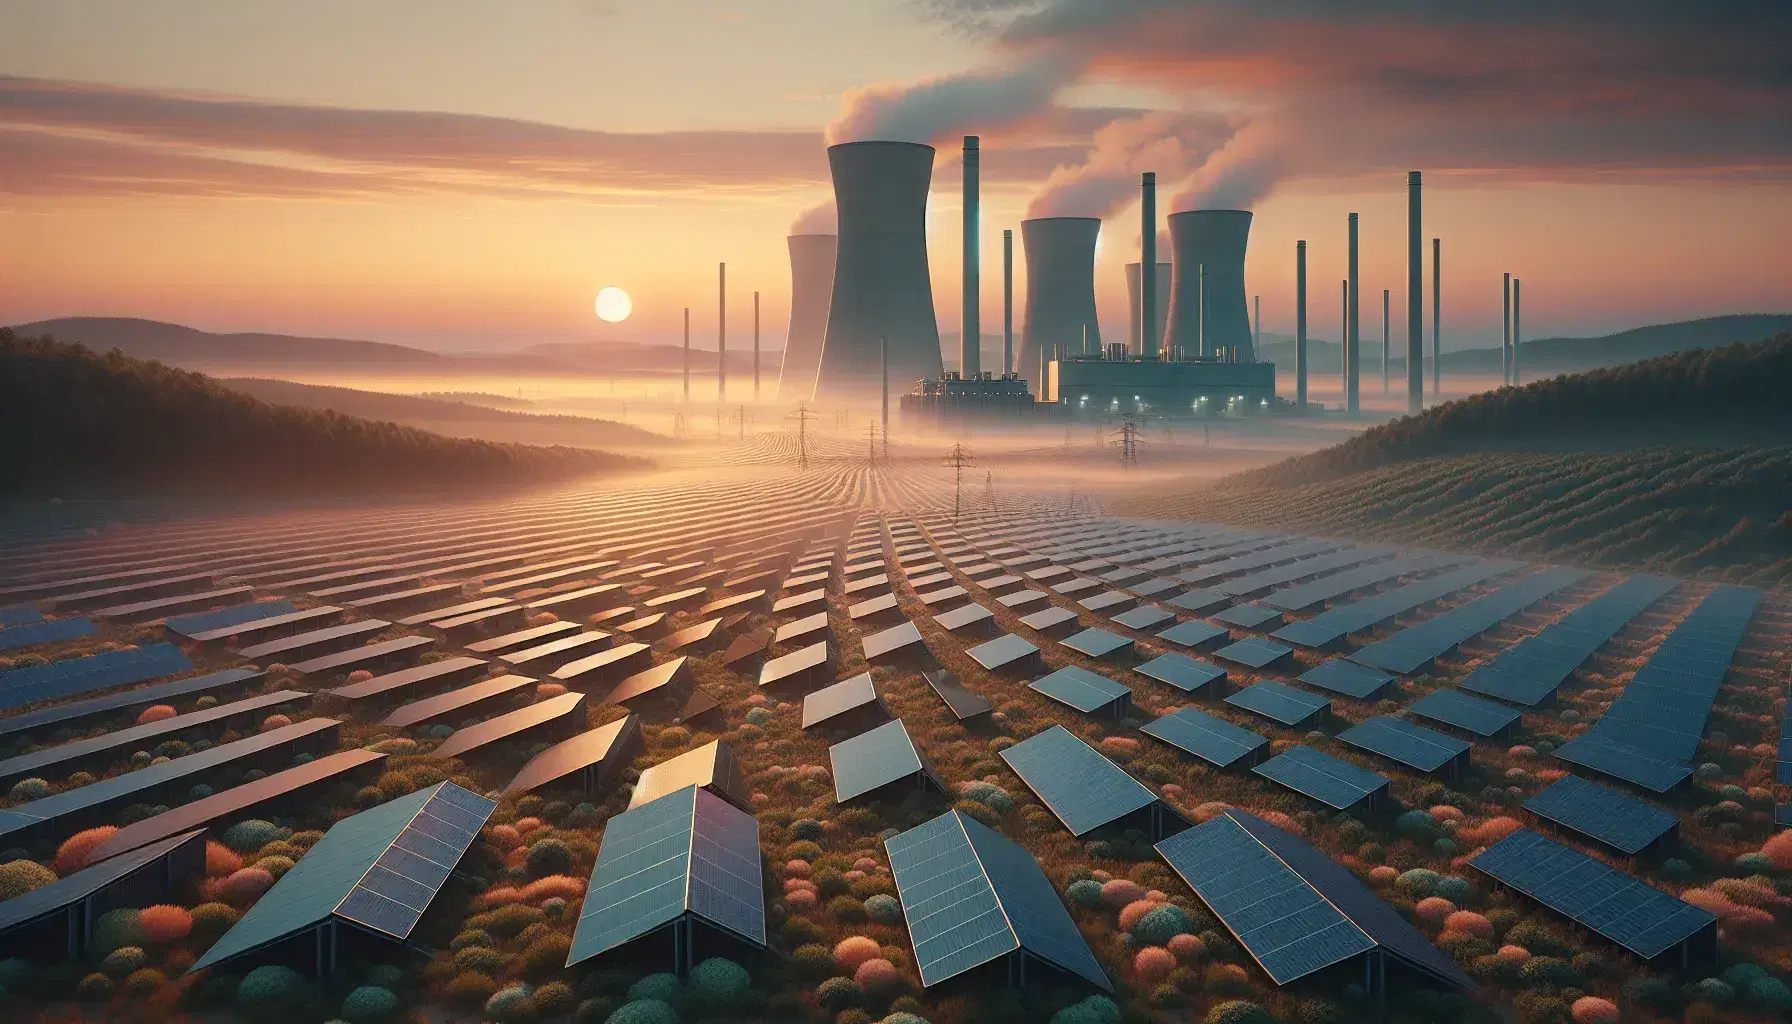 Puesta de sol sobre campo de paneles solares con planta de energía al fondo y colinas verdes, reflejando la armonía entre tecnología y naturaleza.